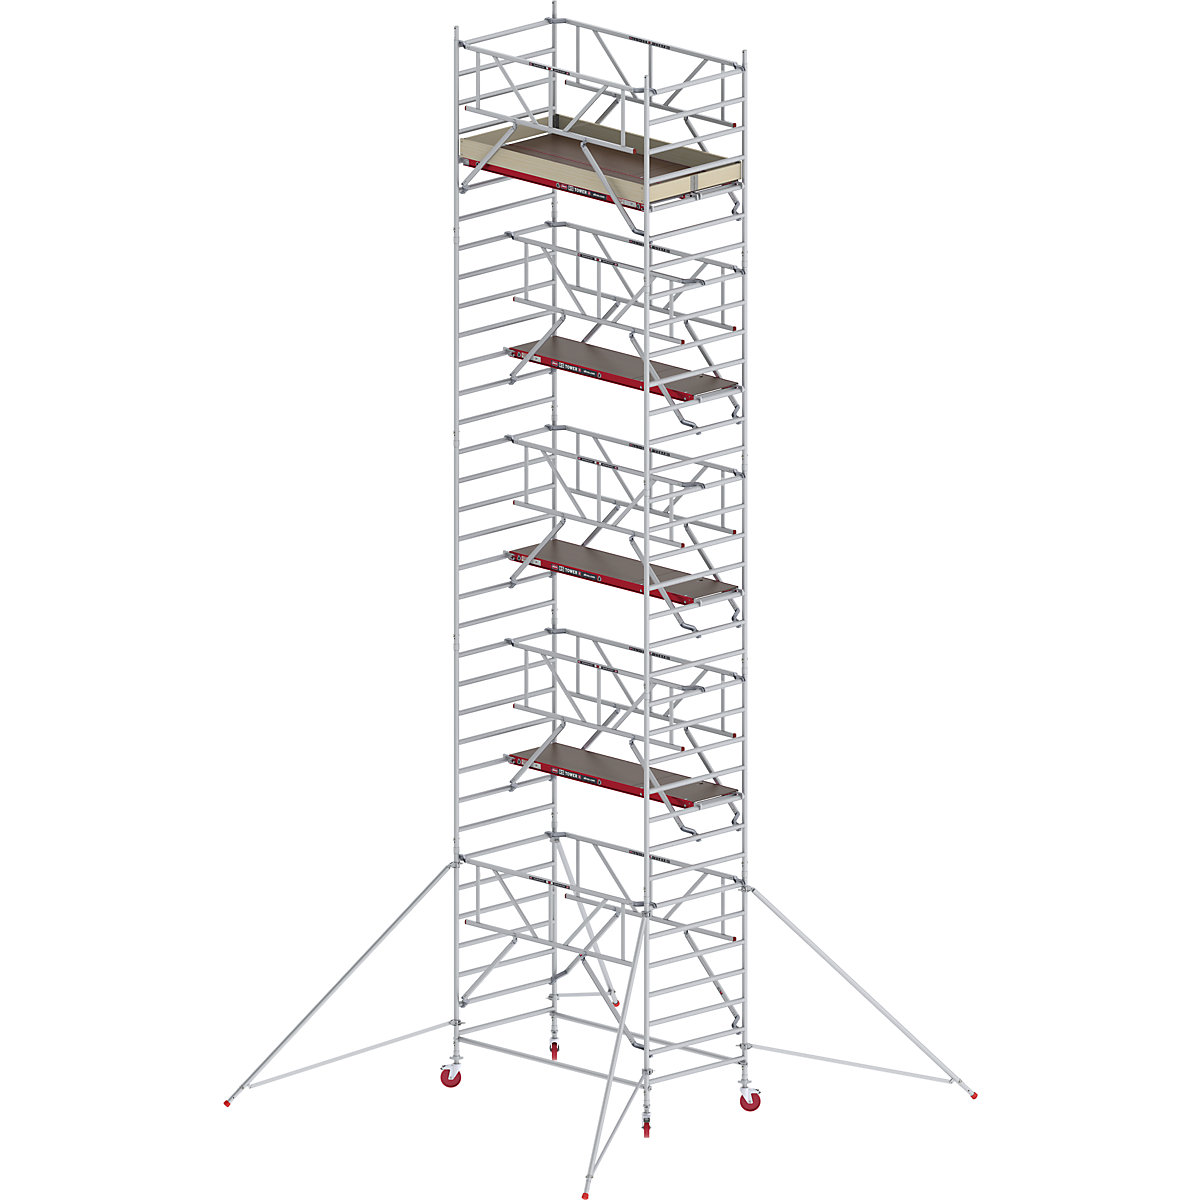 Andaime móvel largo RS TOWER 42 com Safe-Quick® – Altrex, plataforma de madeira, comprimento 2,45 m, altura de trabalho 11,20 m-3